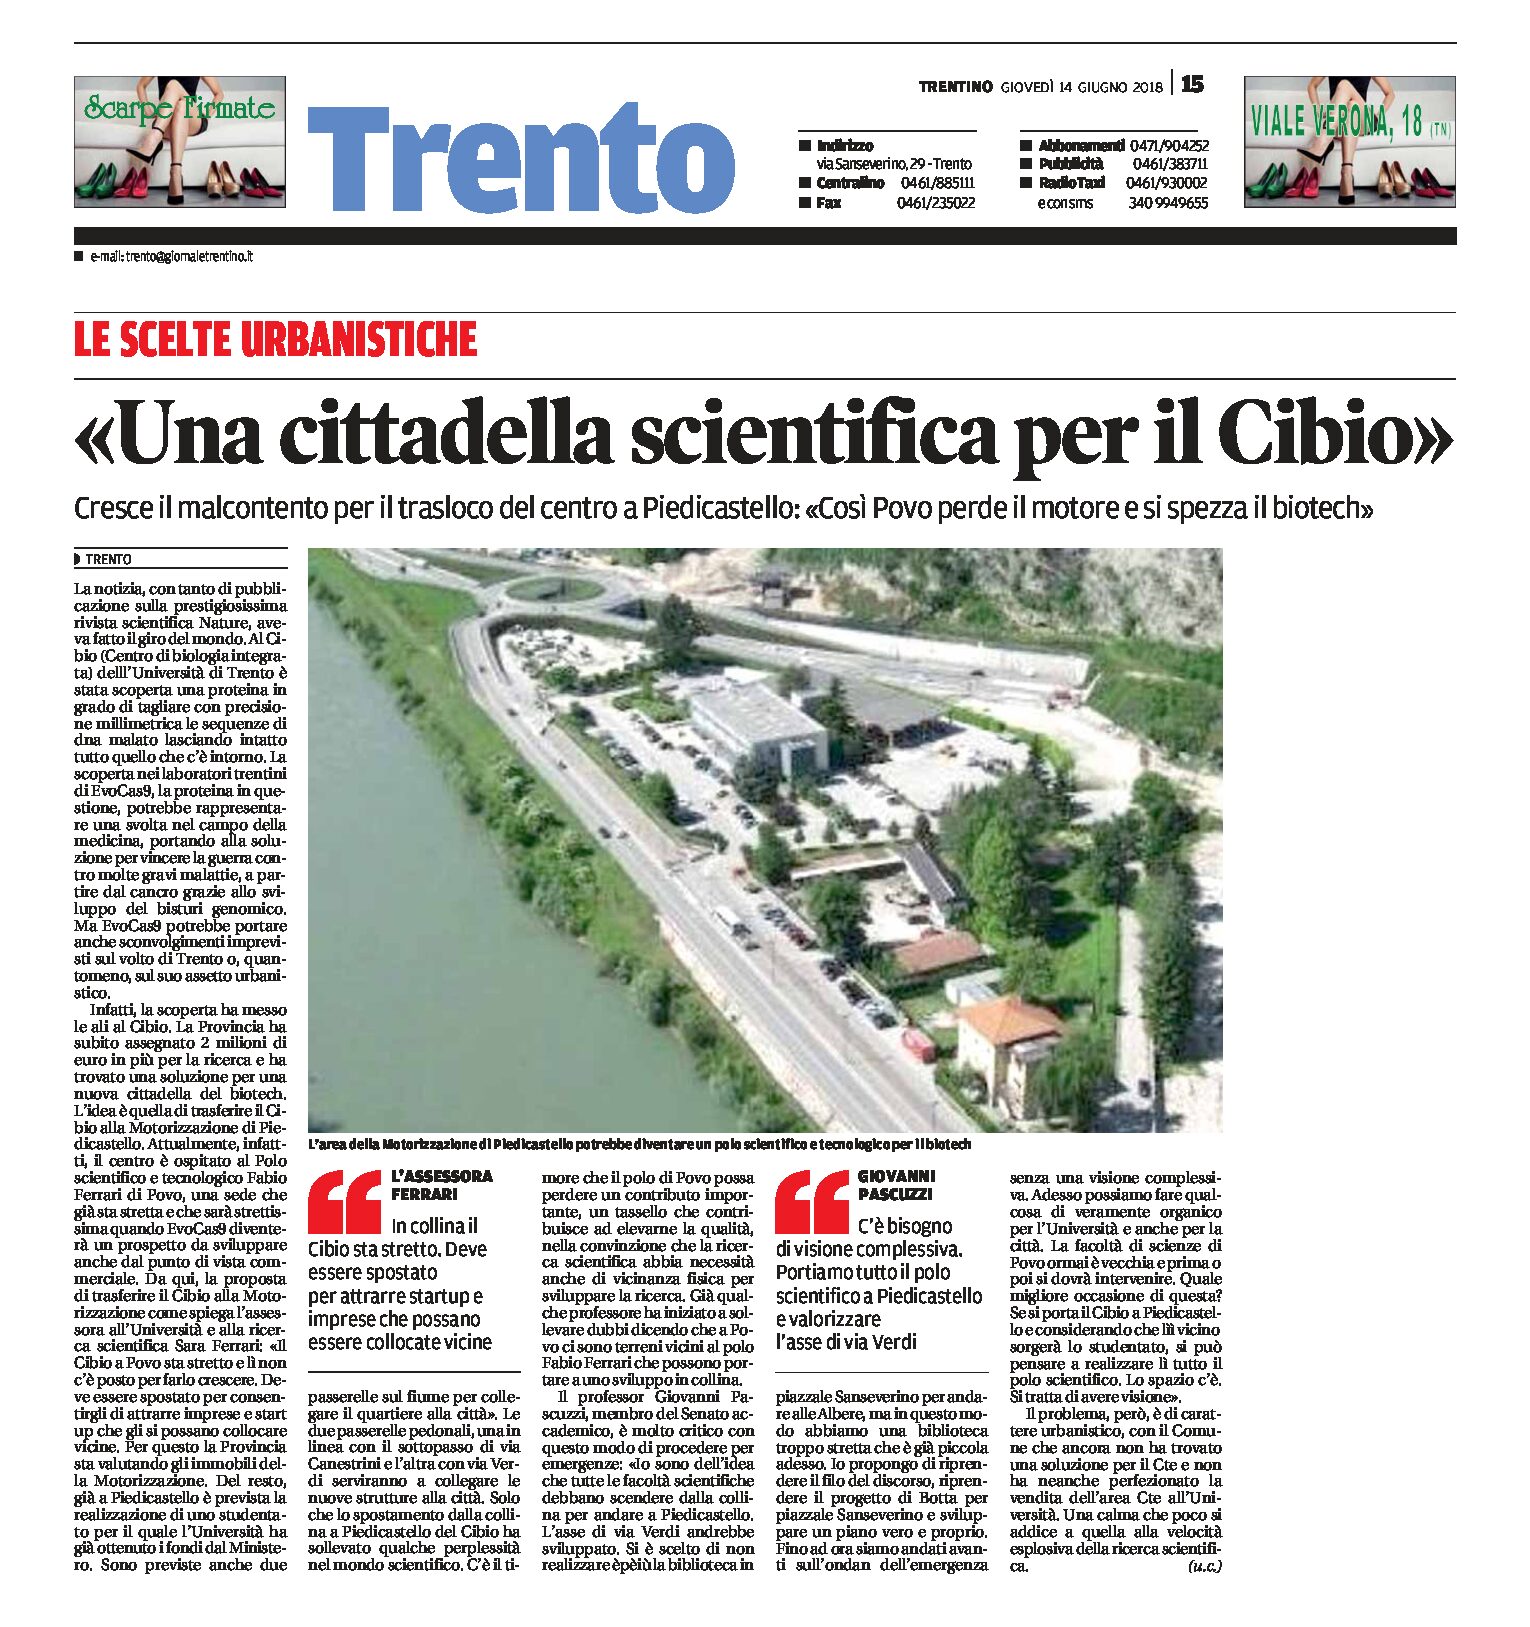 Trento, Piedicastello: una cittadella scientifica per il Cibio